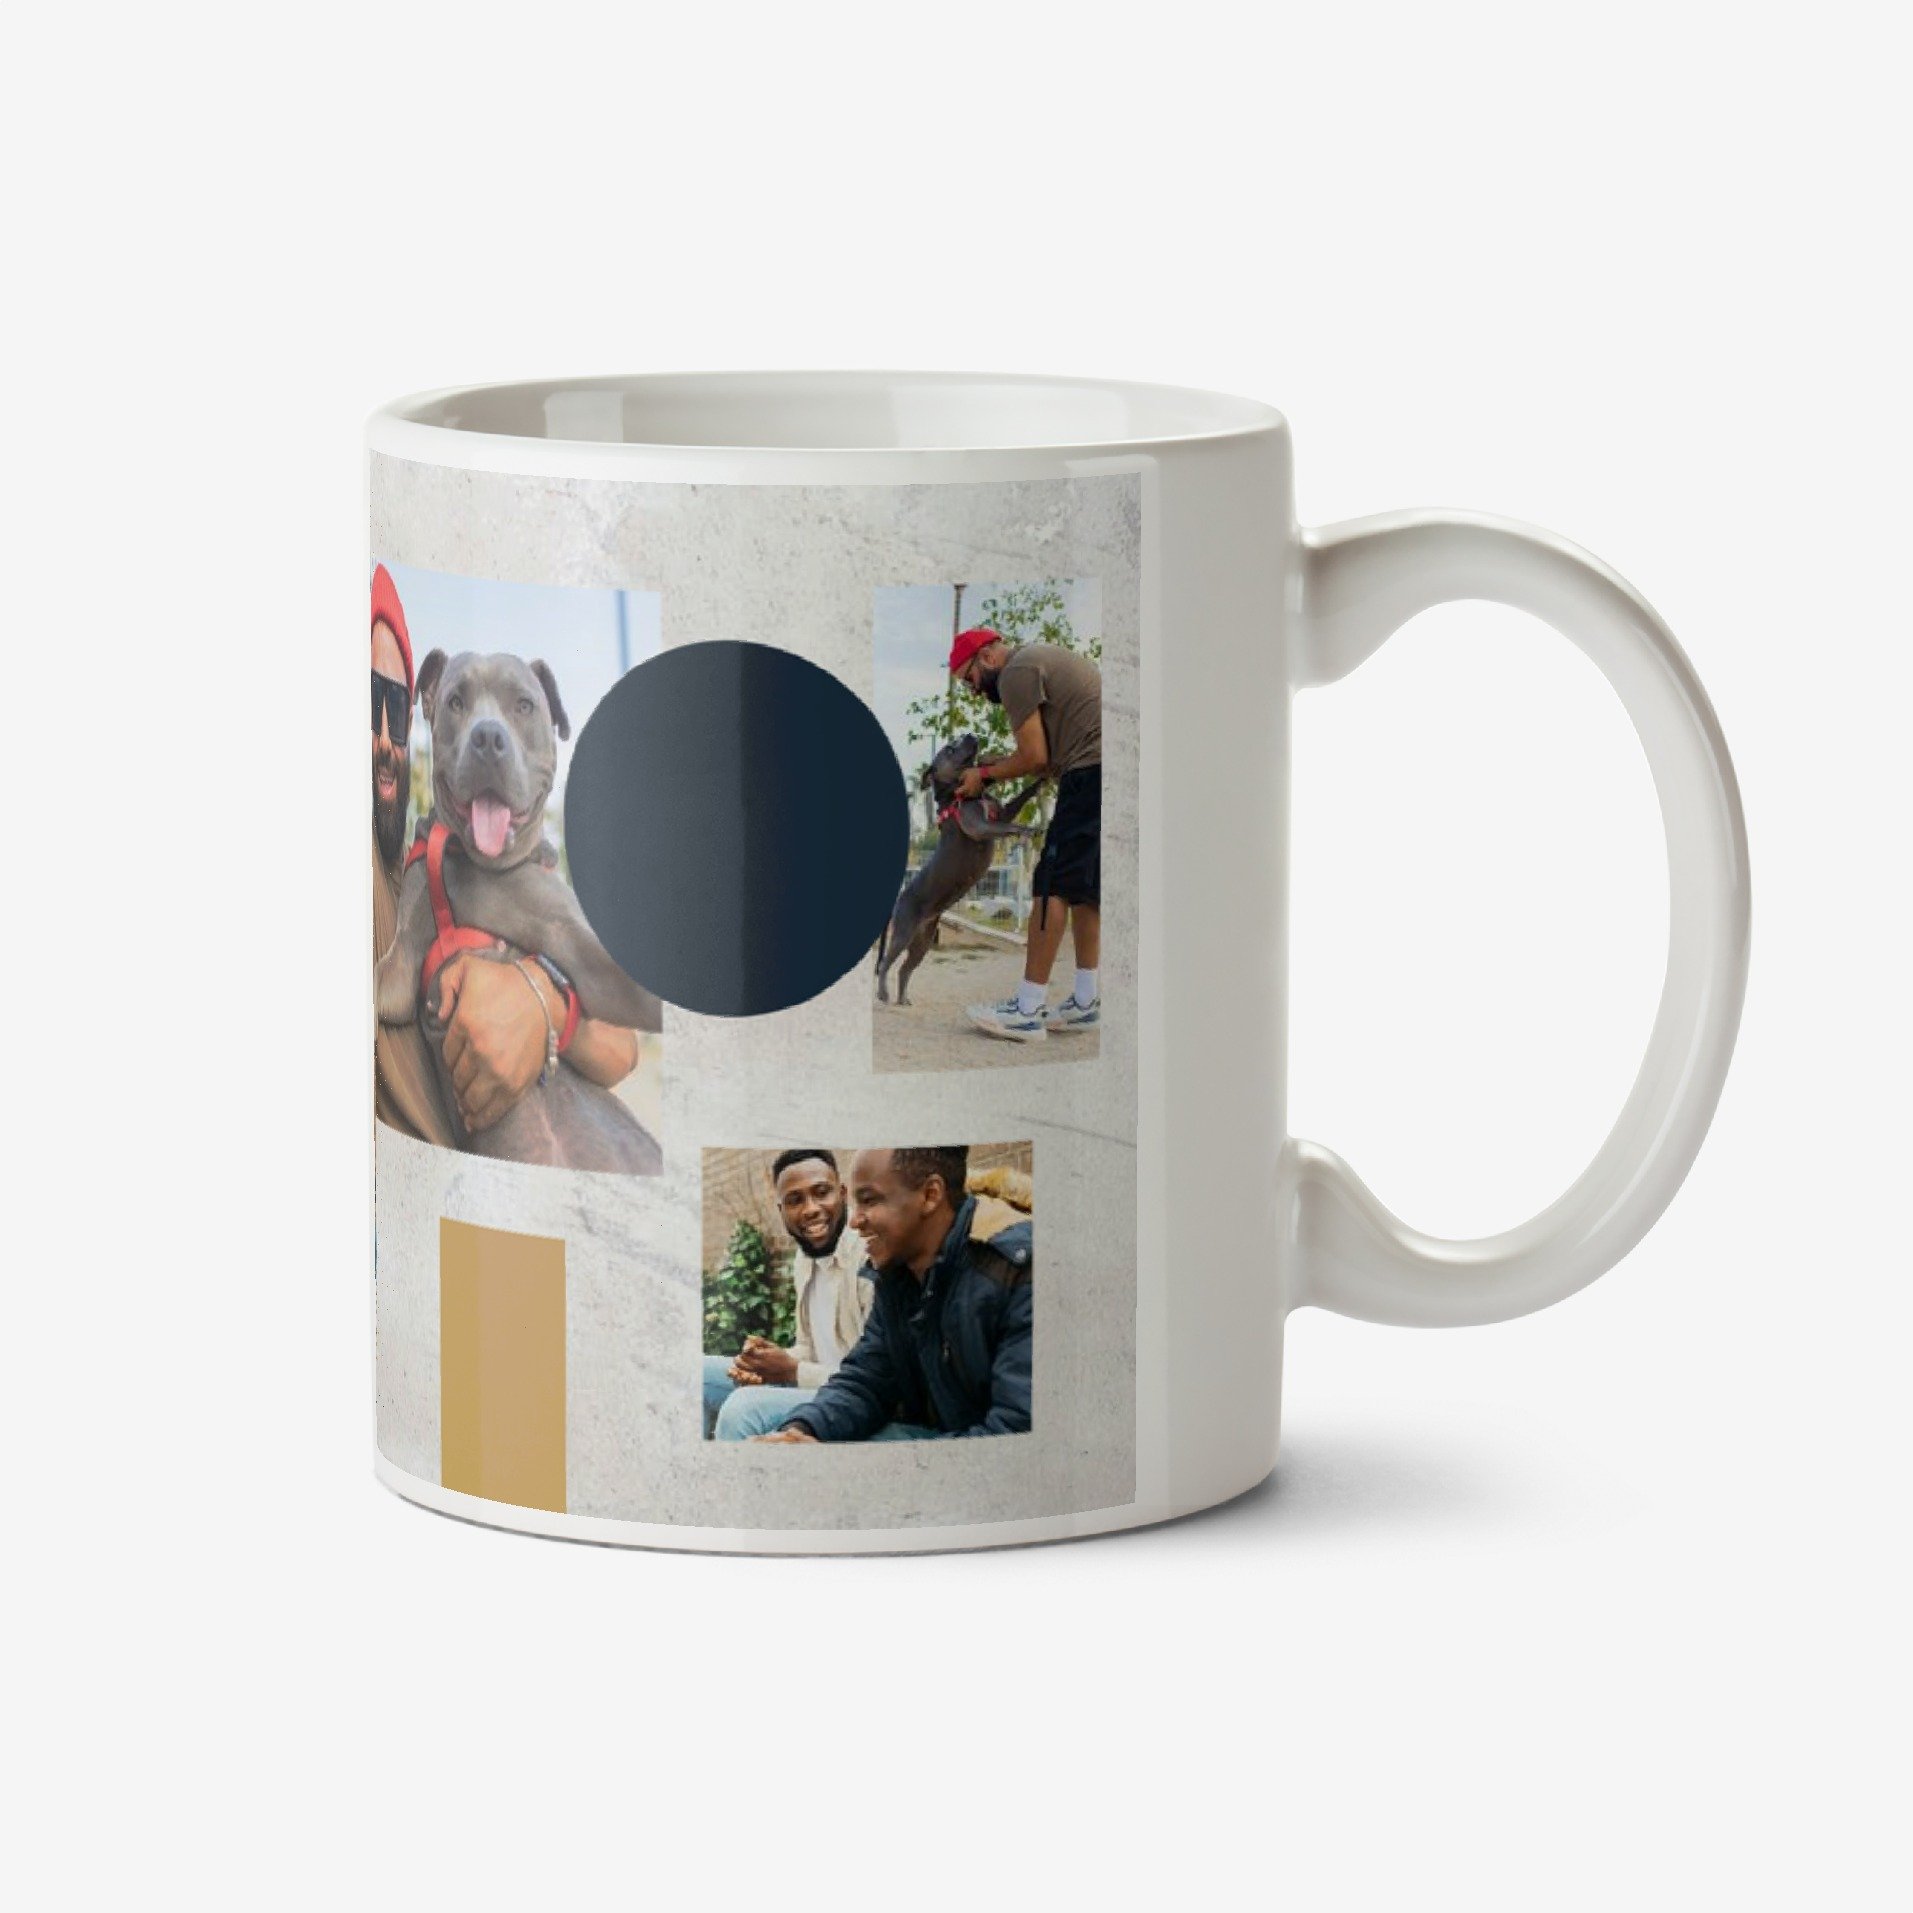 Moonpig Multiple Photo Frames With Shapes On A Grey Textured Background Mug Ceramic Mug